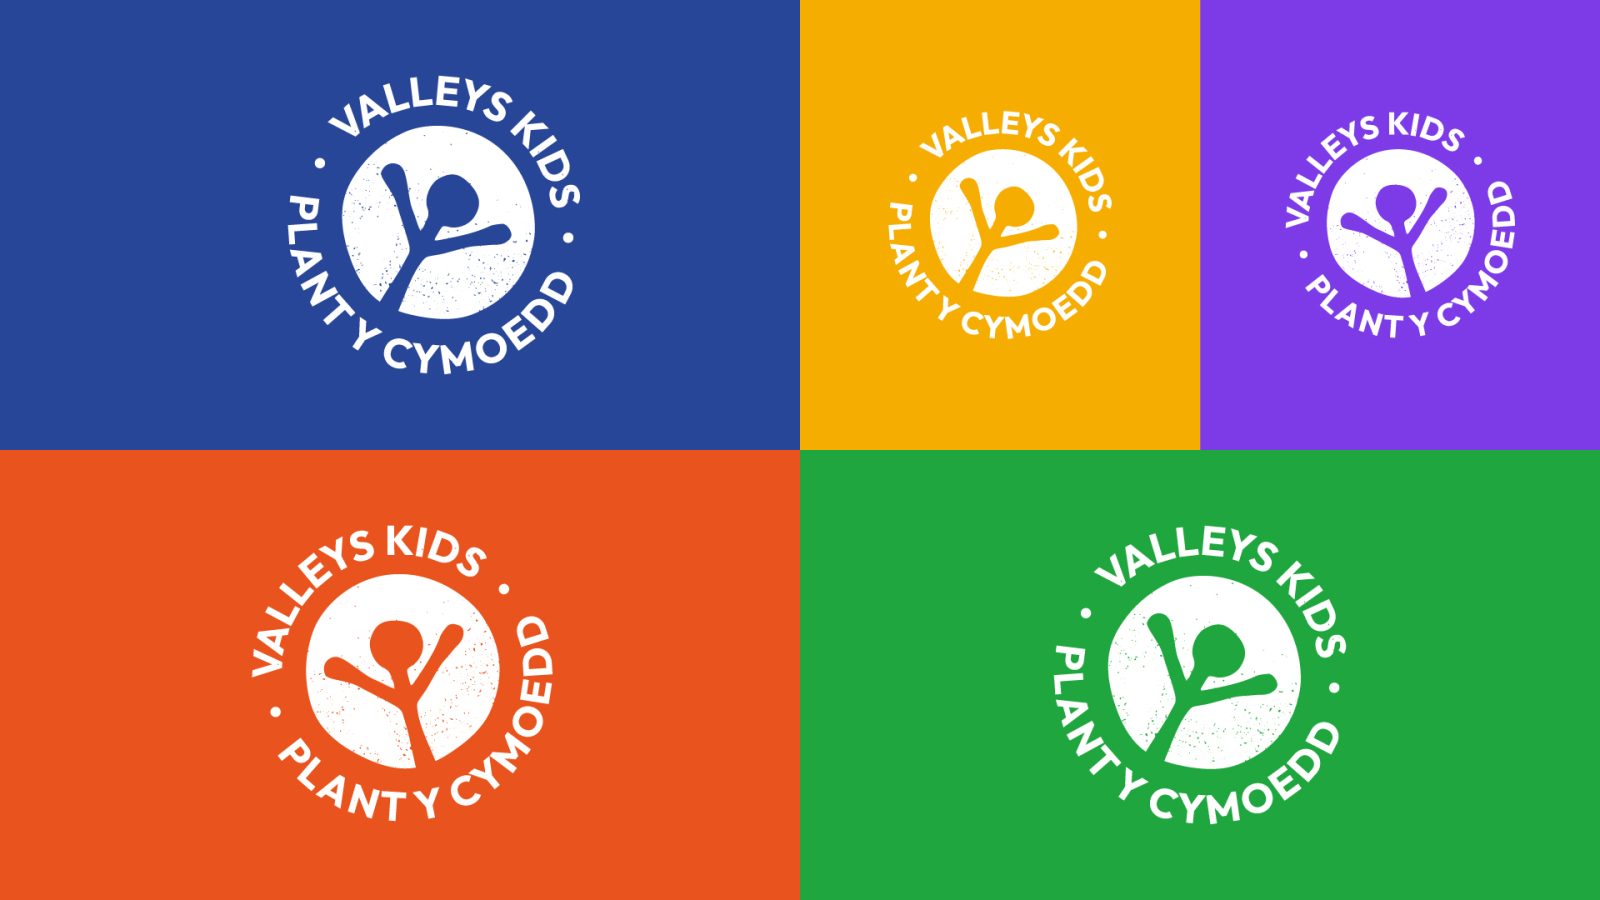 Valleys Kids - group 1 logos